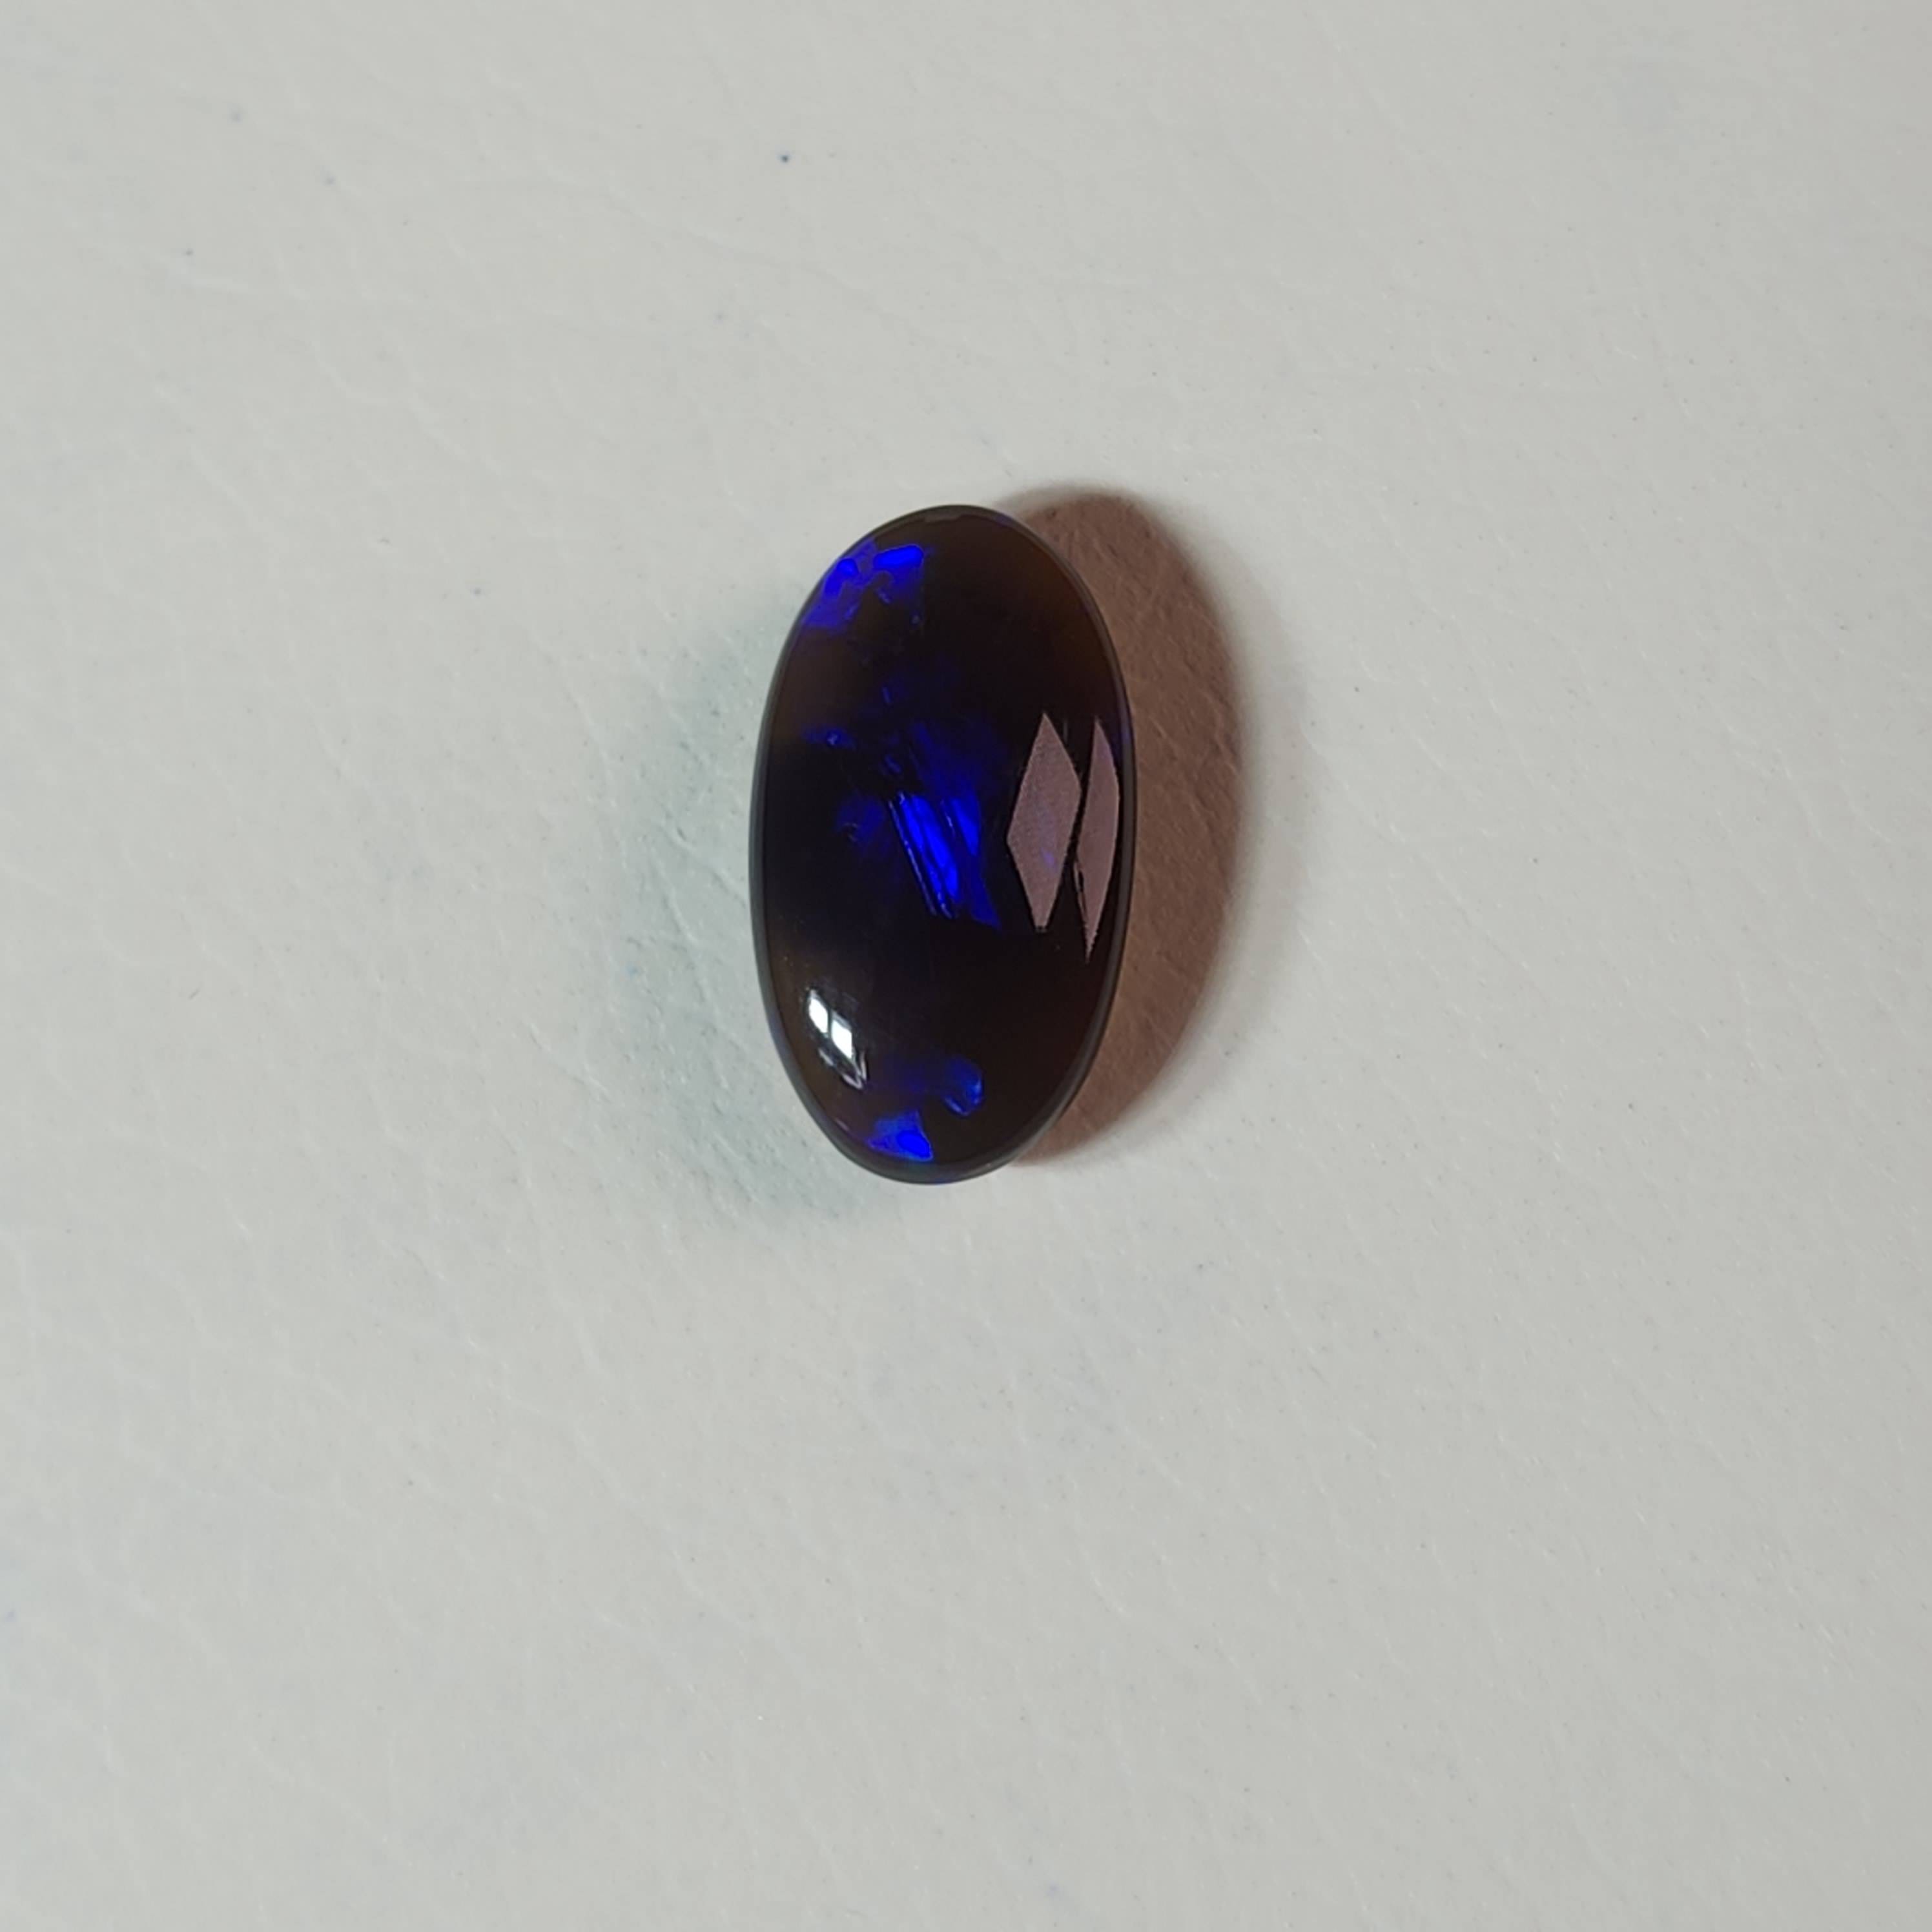 Australian Black Opal - Australian Opal Jewellery Online Store